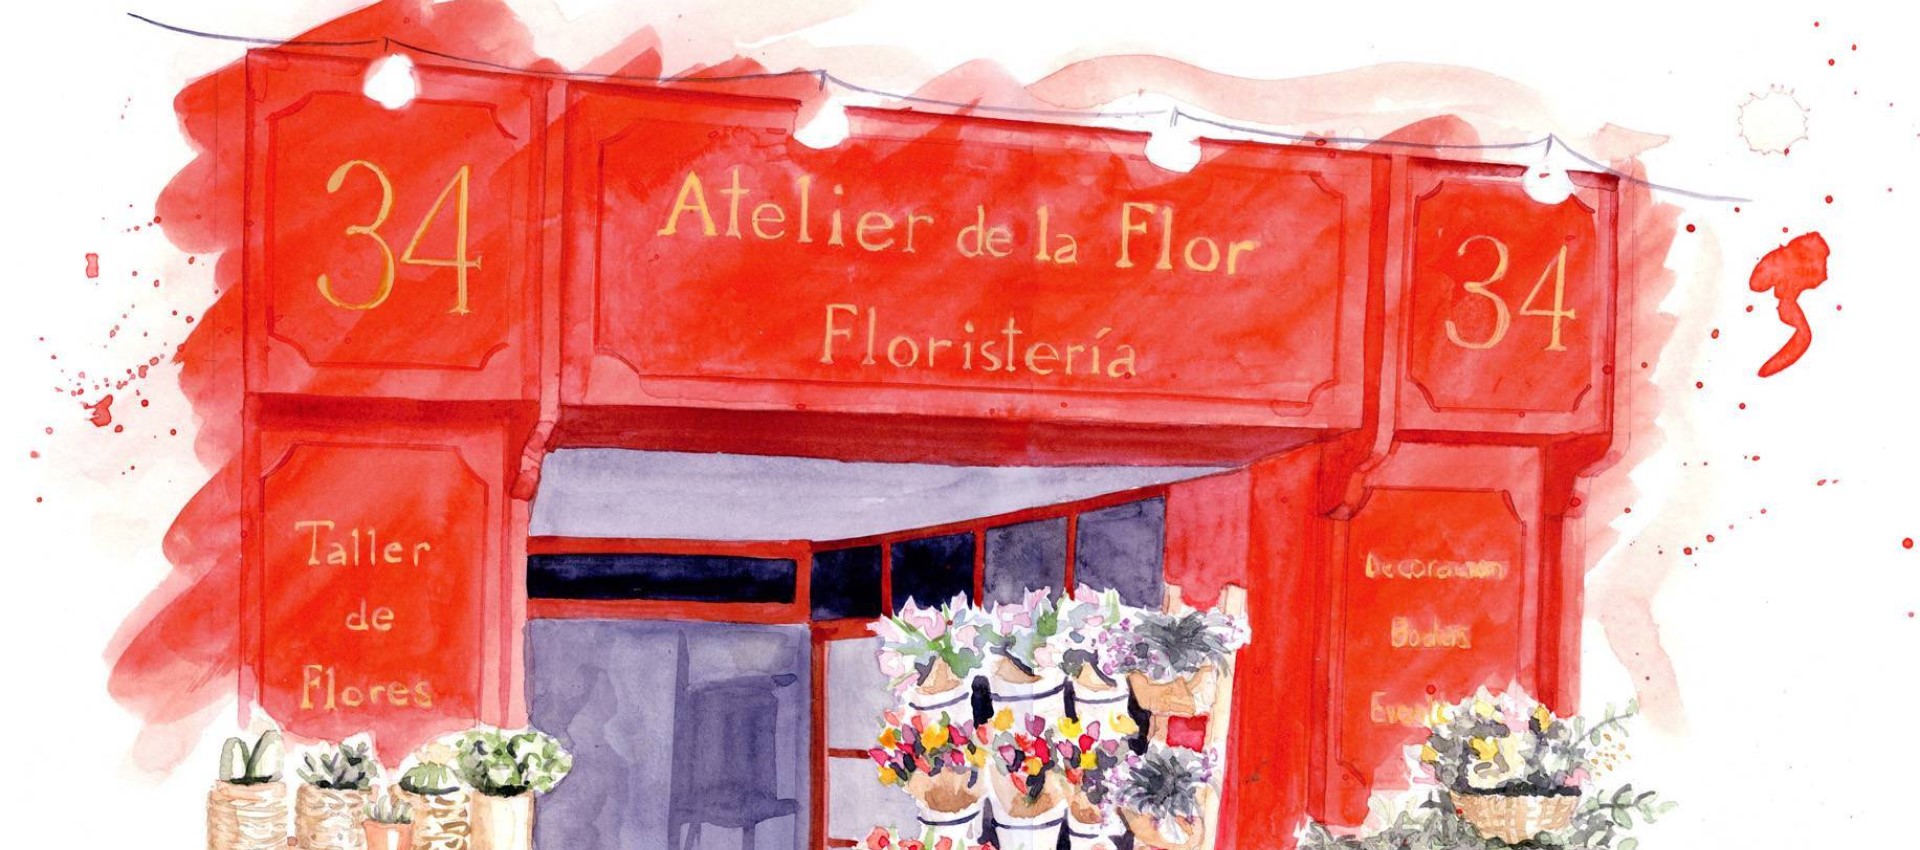 Atelier de la Flor, de meest succesvolle winkel voor bloemen, workshops en eventdecoratie in Valencia